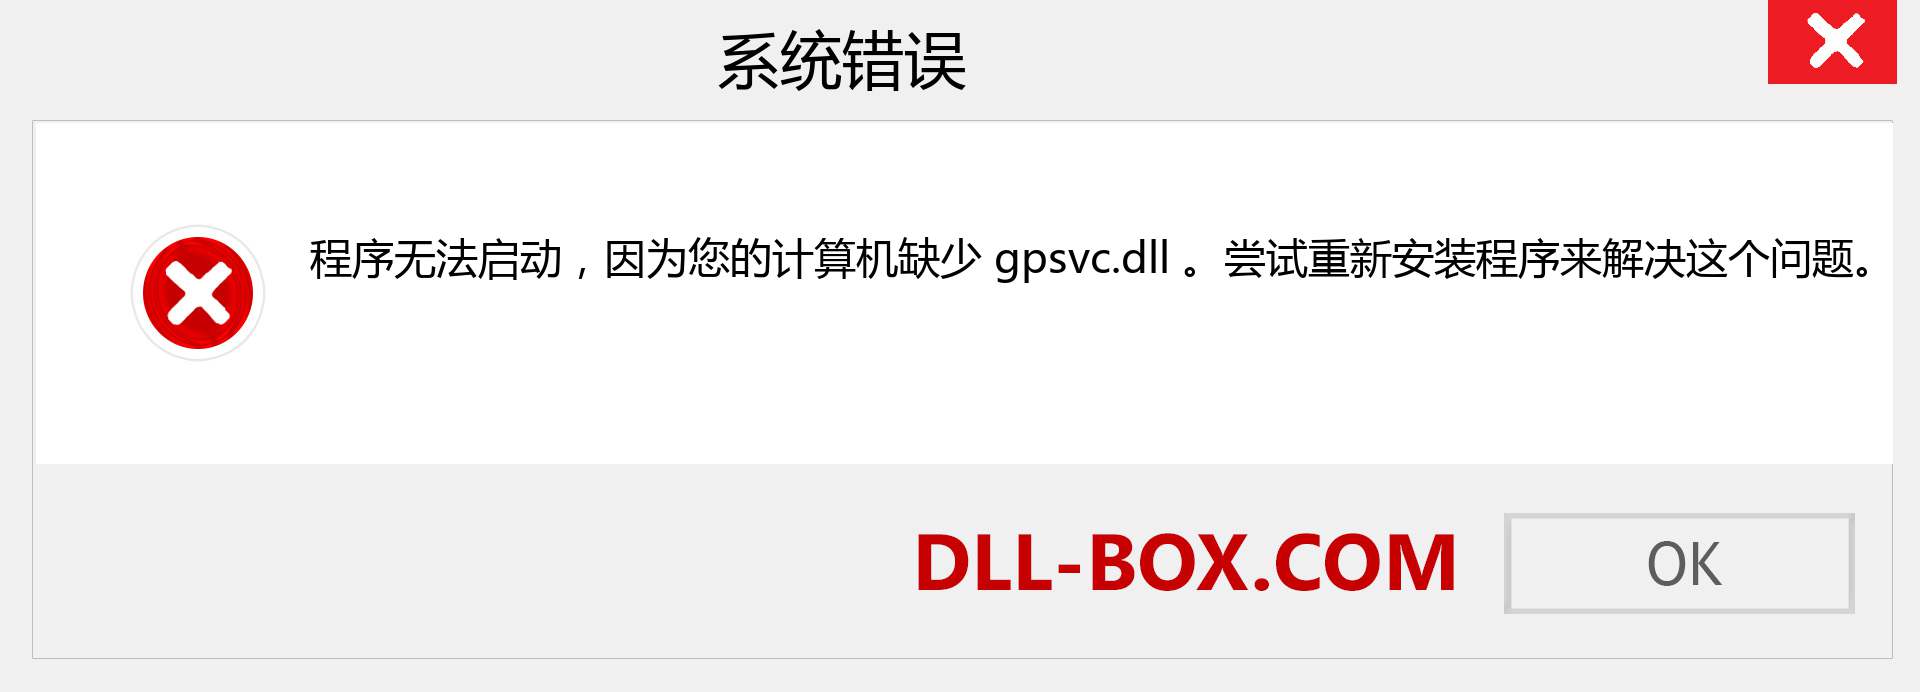 gpsvc.dll 文件丢失？。 适用于 Windows 7、8、10 的下载 - 修复 Windows、照片、图像上的 gpsvc dll 丢失错误